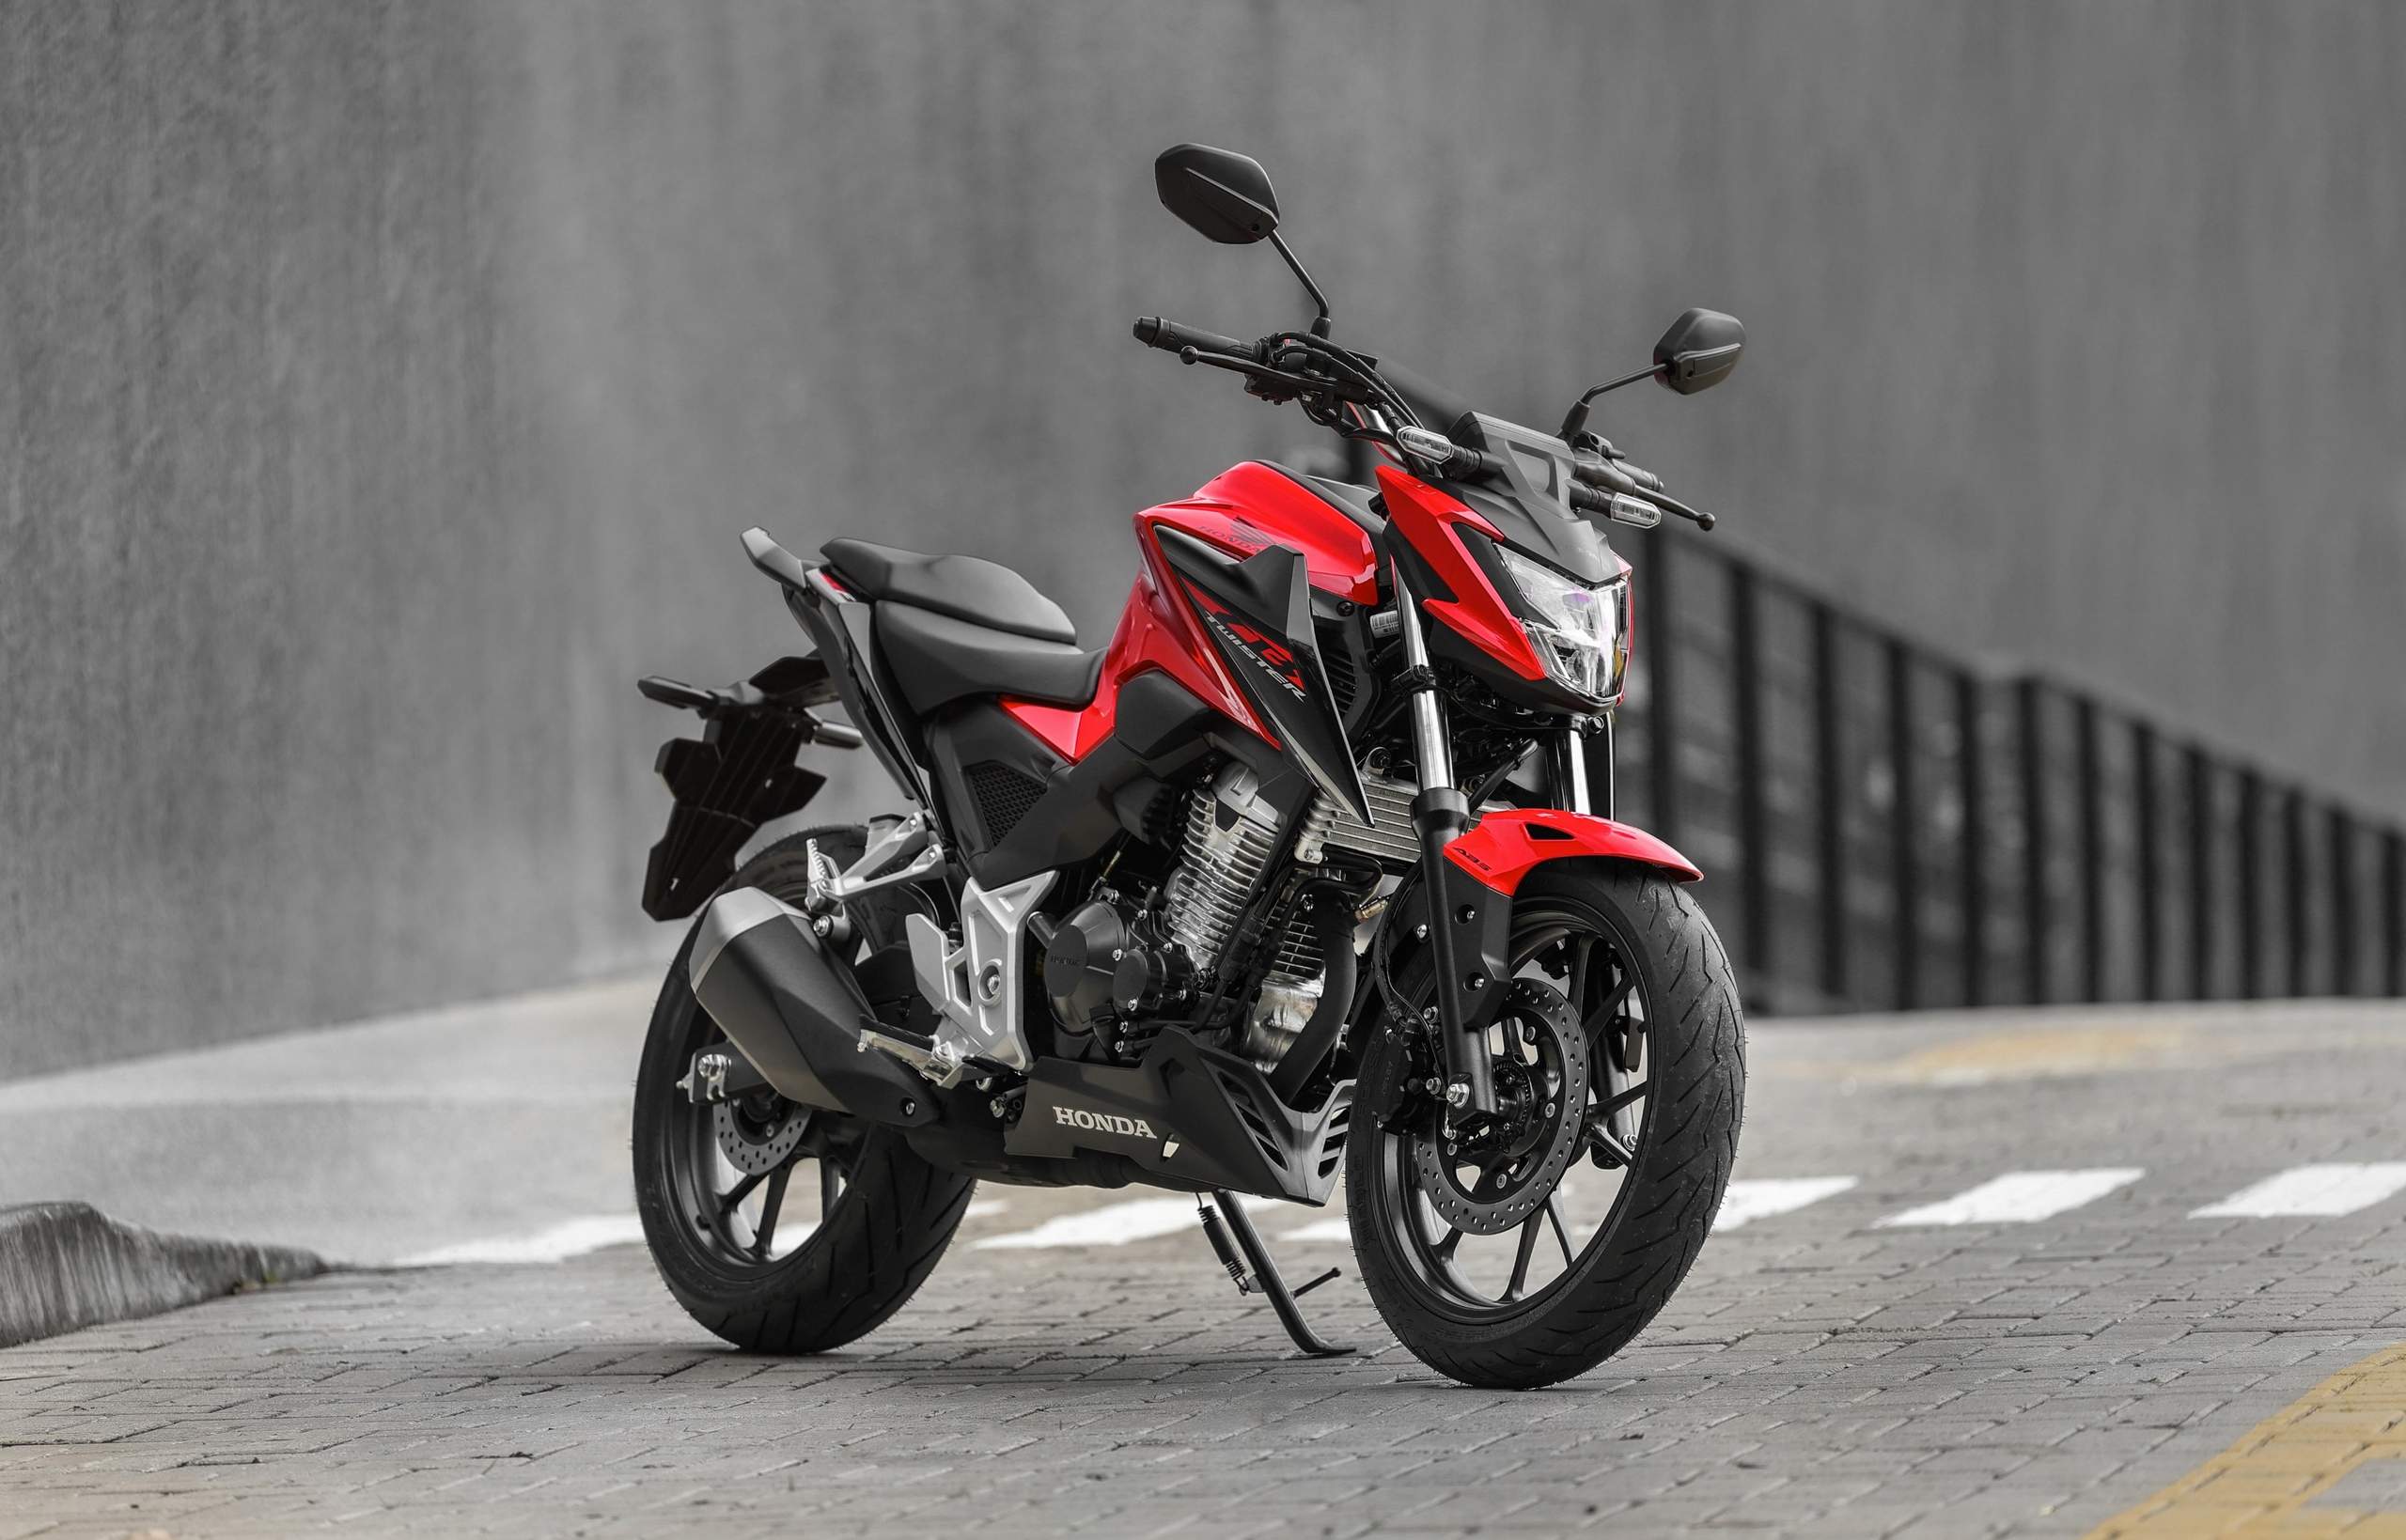 Honda Nossamoto realiza coquetel de lançamento da moto CB 300F Twister nesta sexta-feira (10)